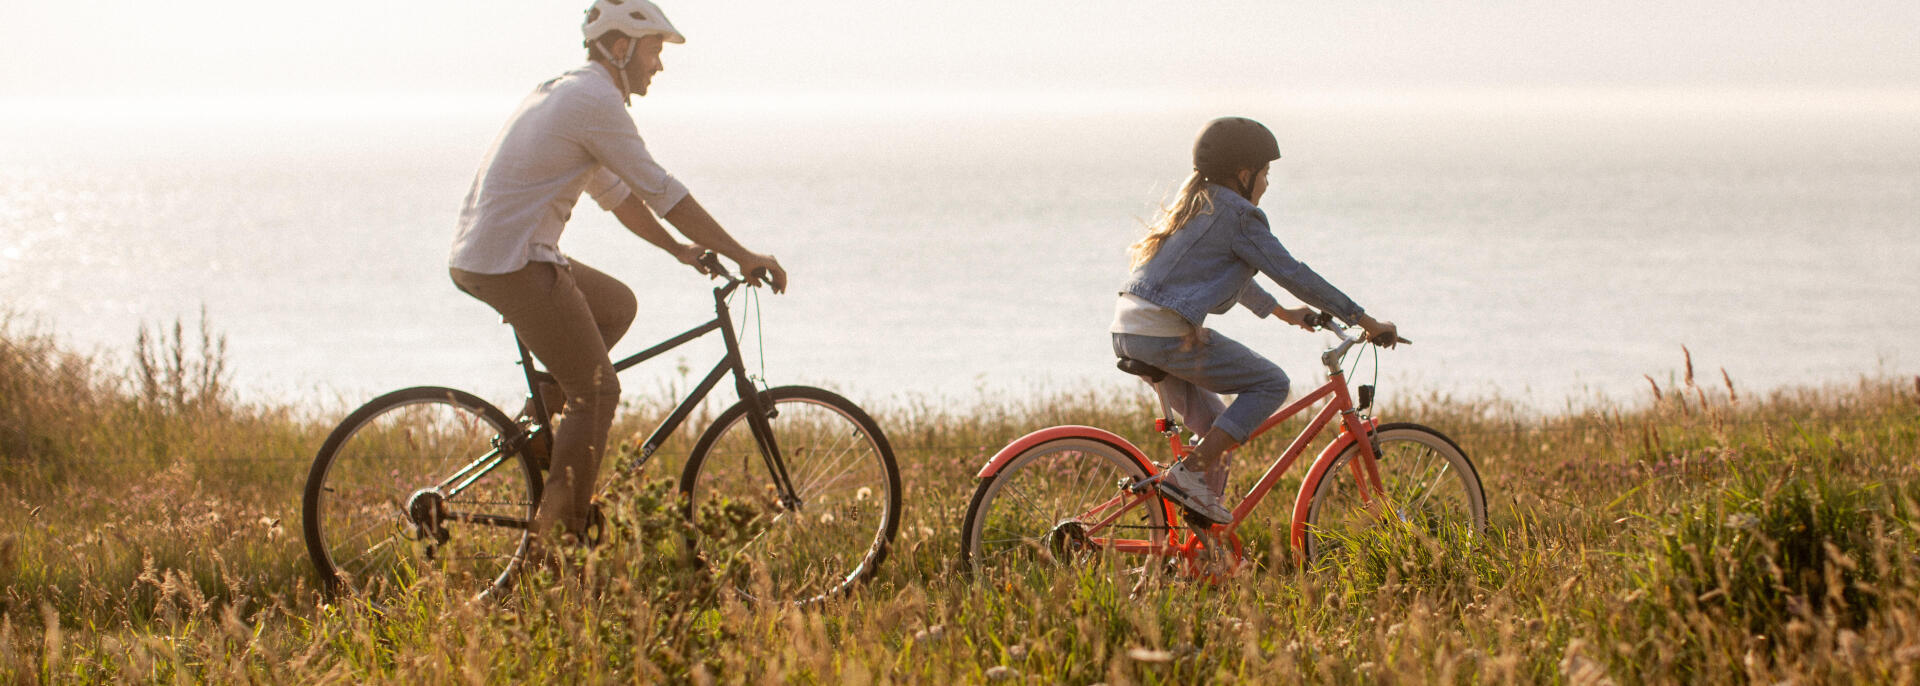 Come muoversi in bici con un bambino/una bambina?